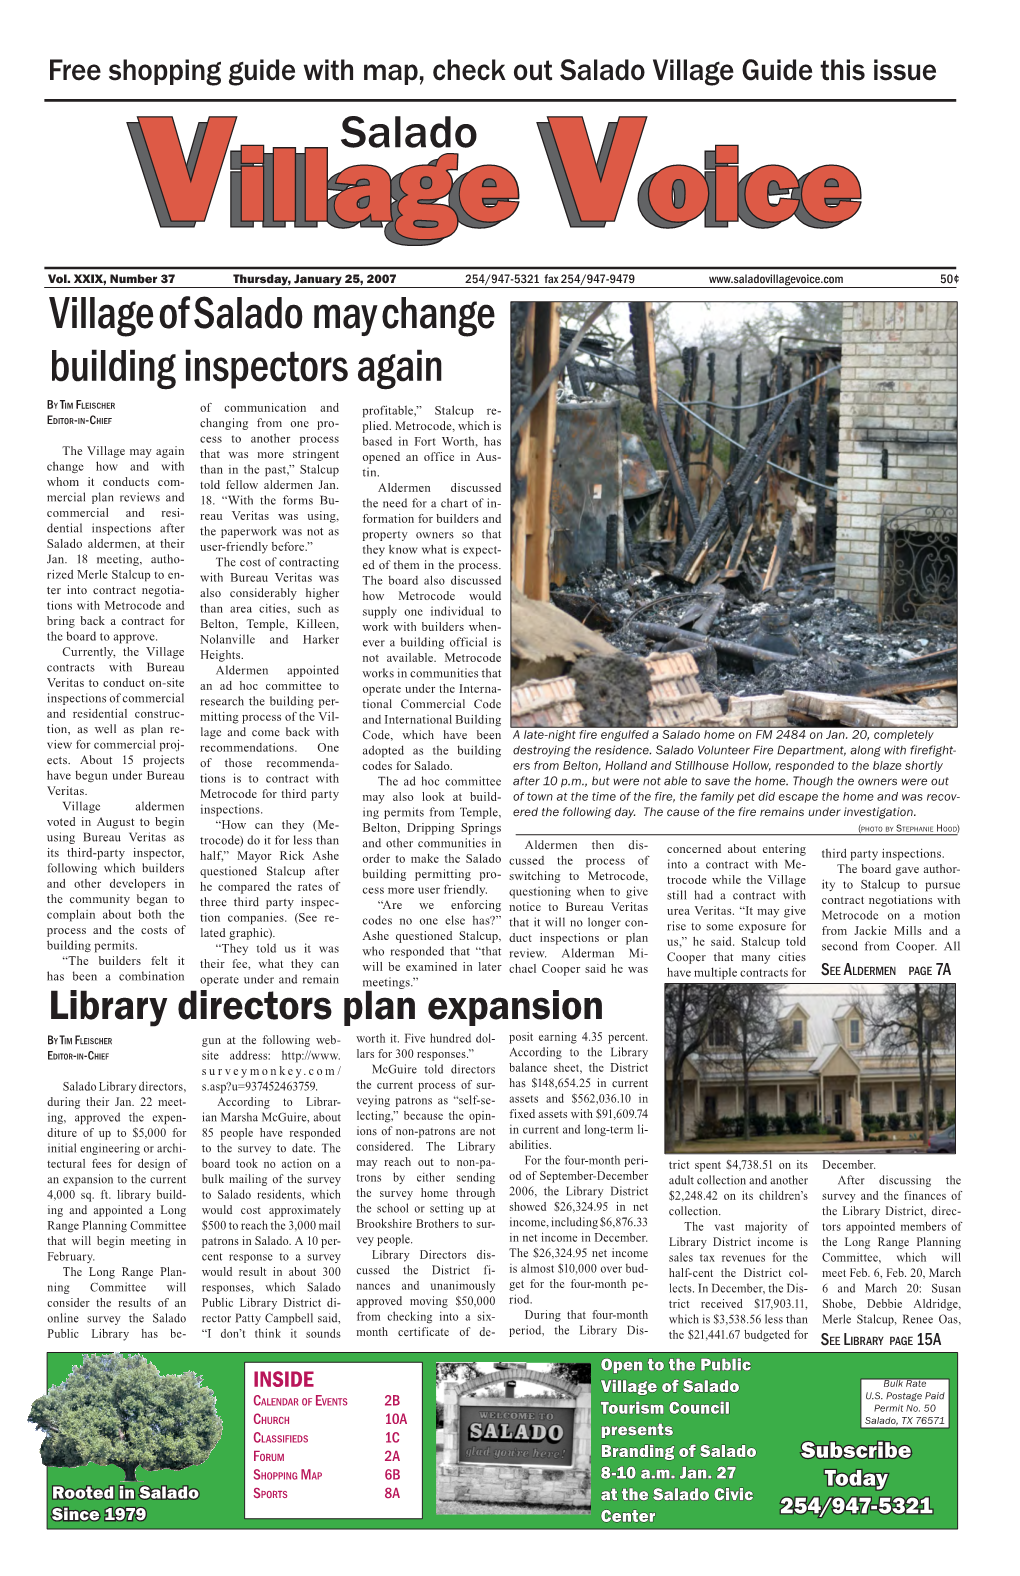 Salado Village of Salado May Change Building Inspectors Again